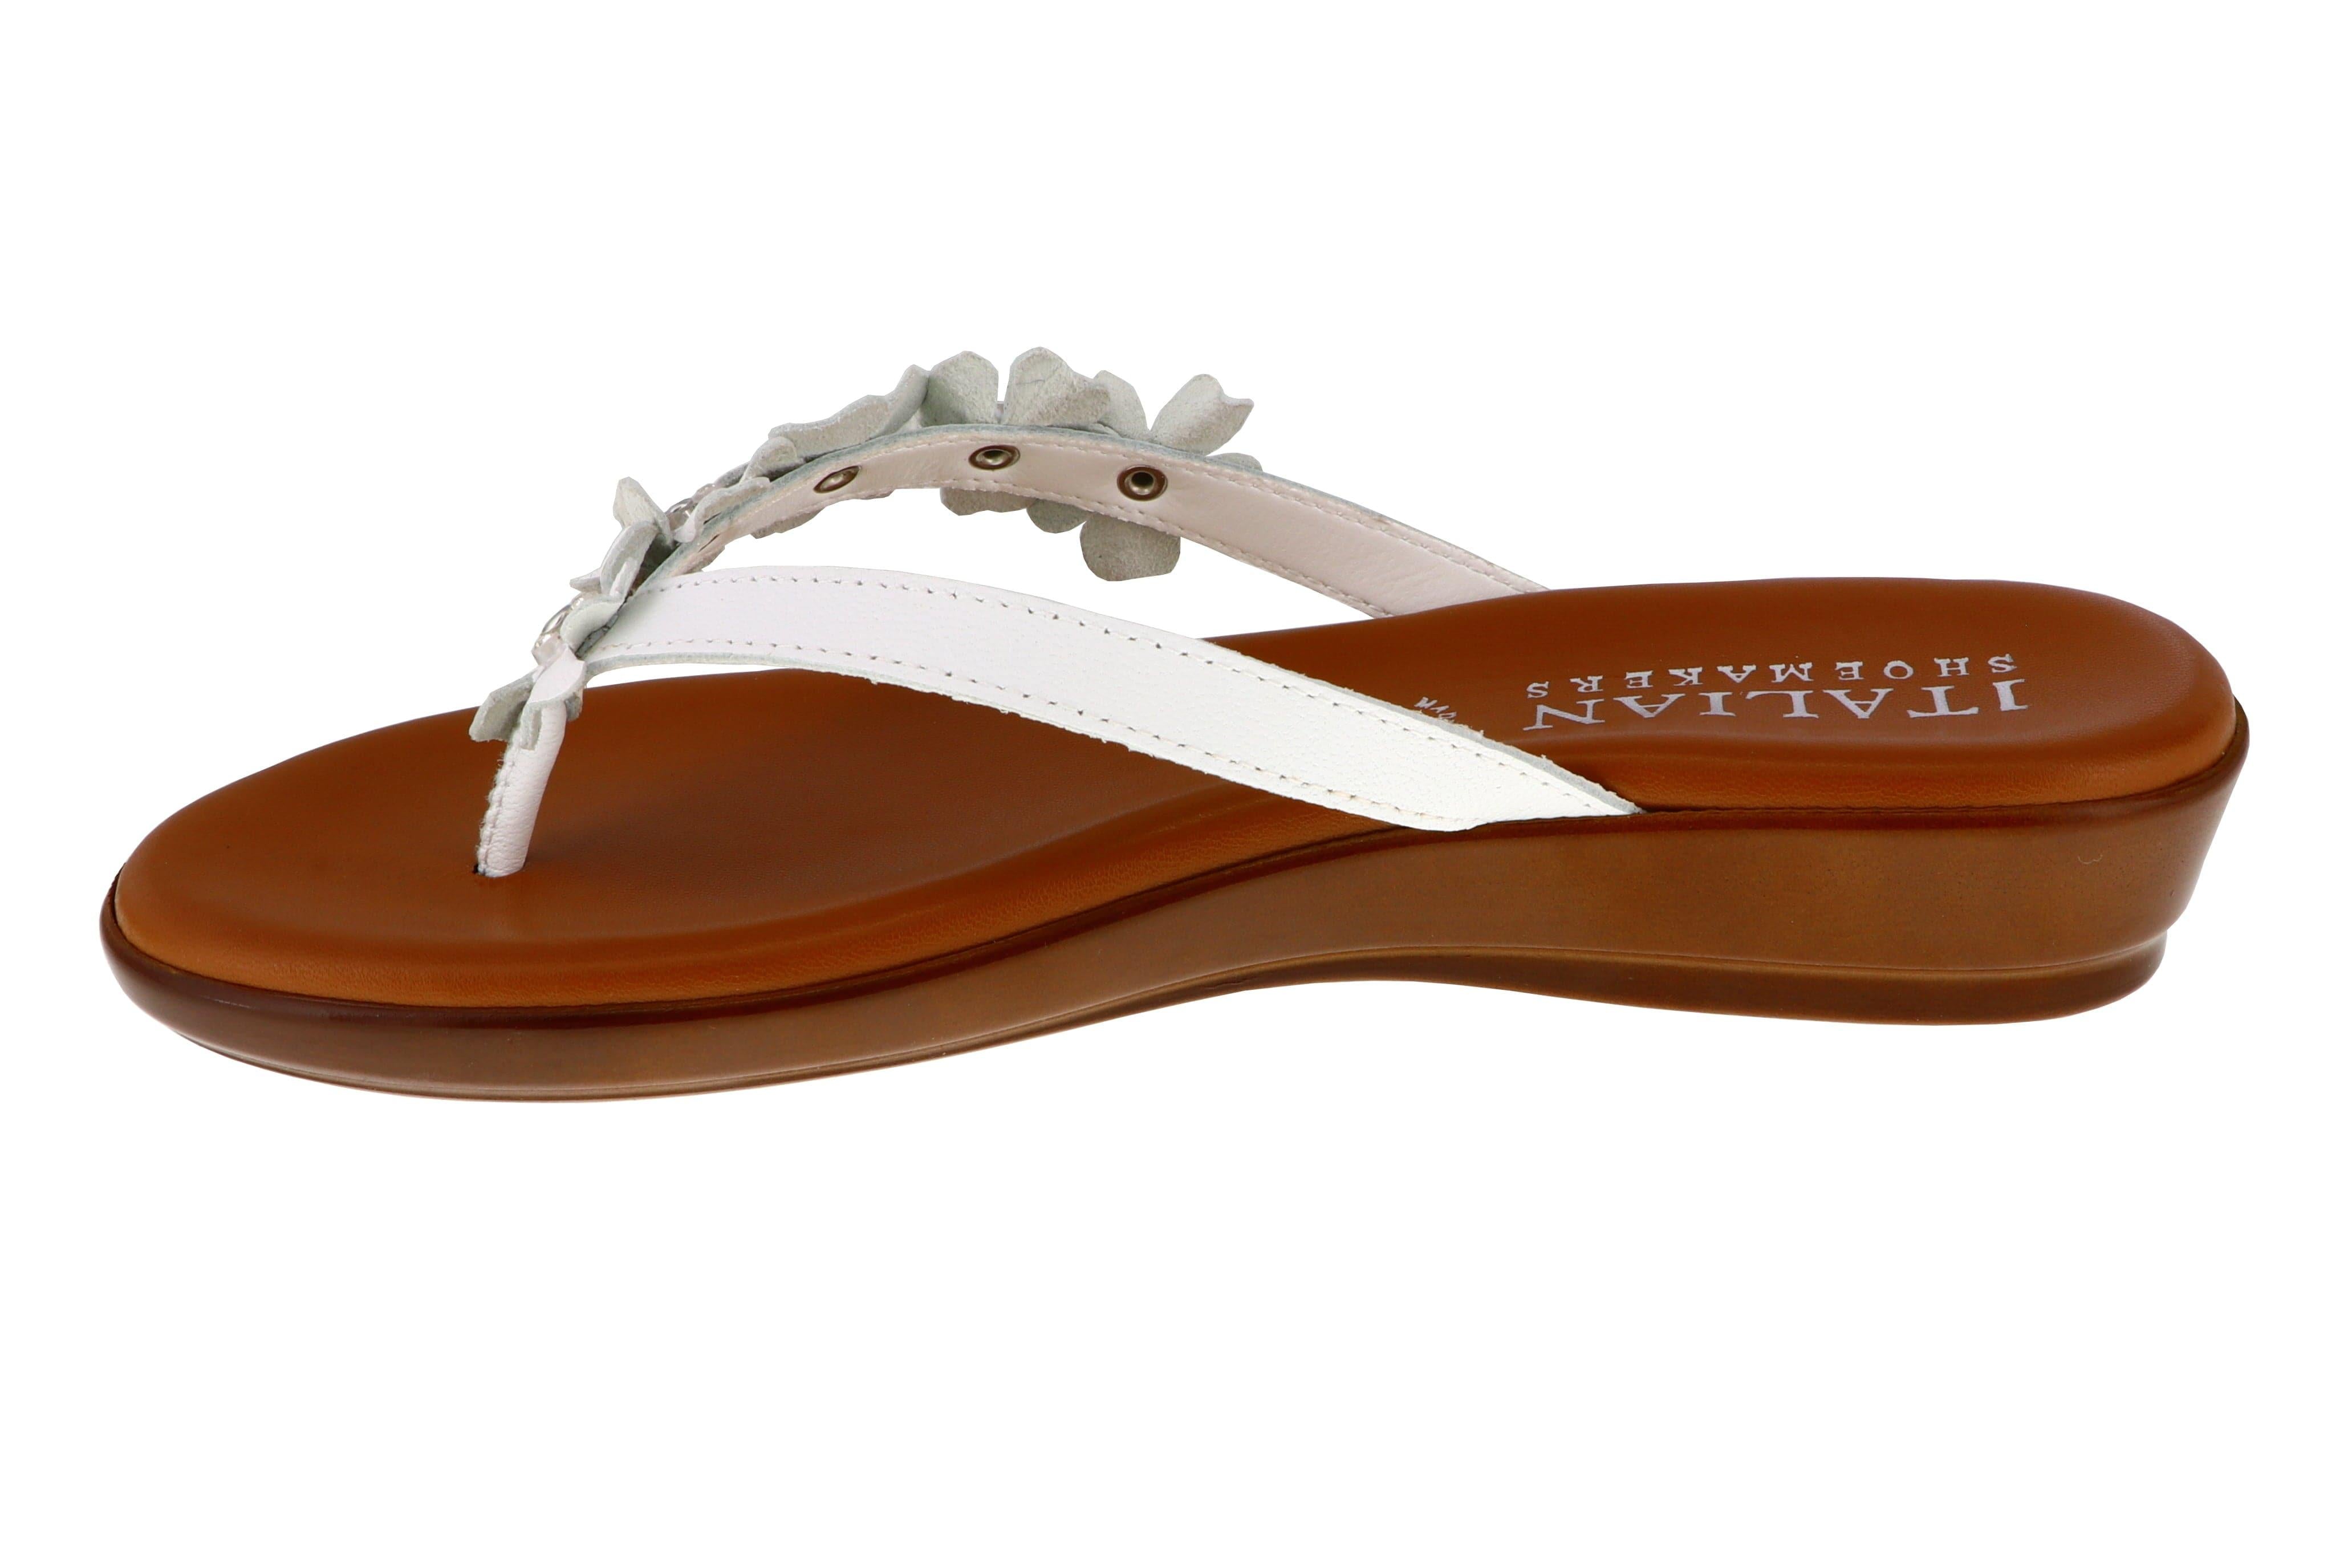 Women's flat sandal